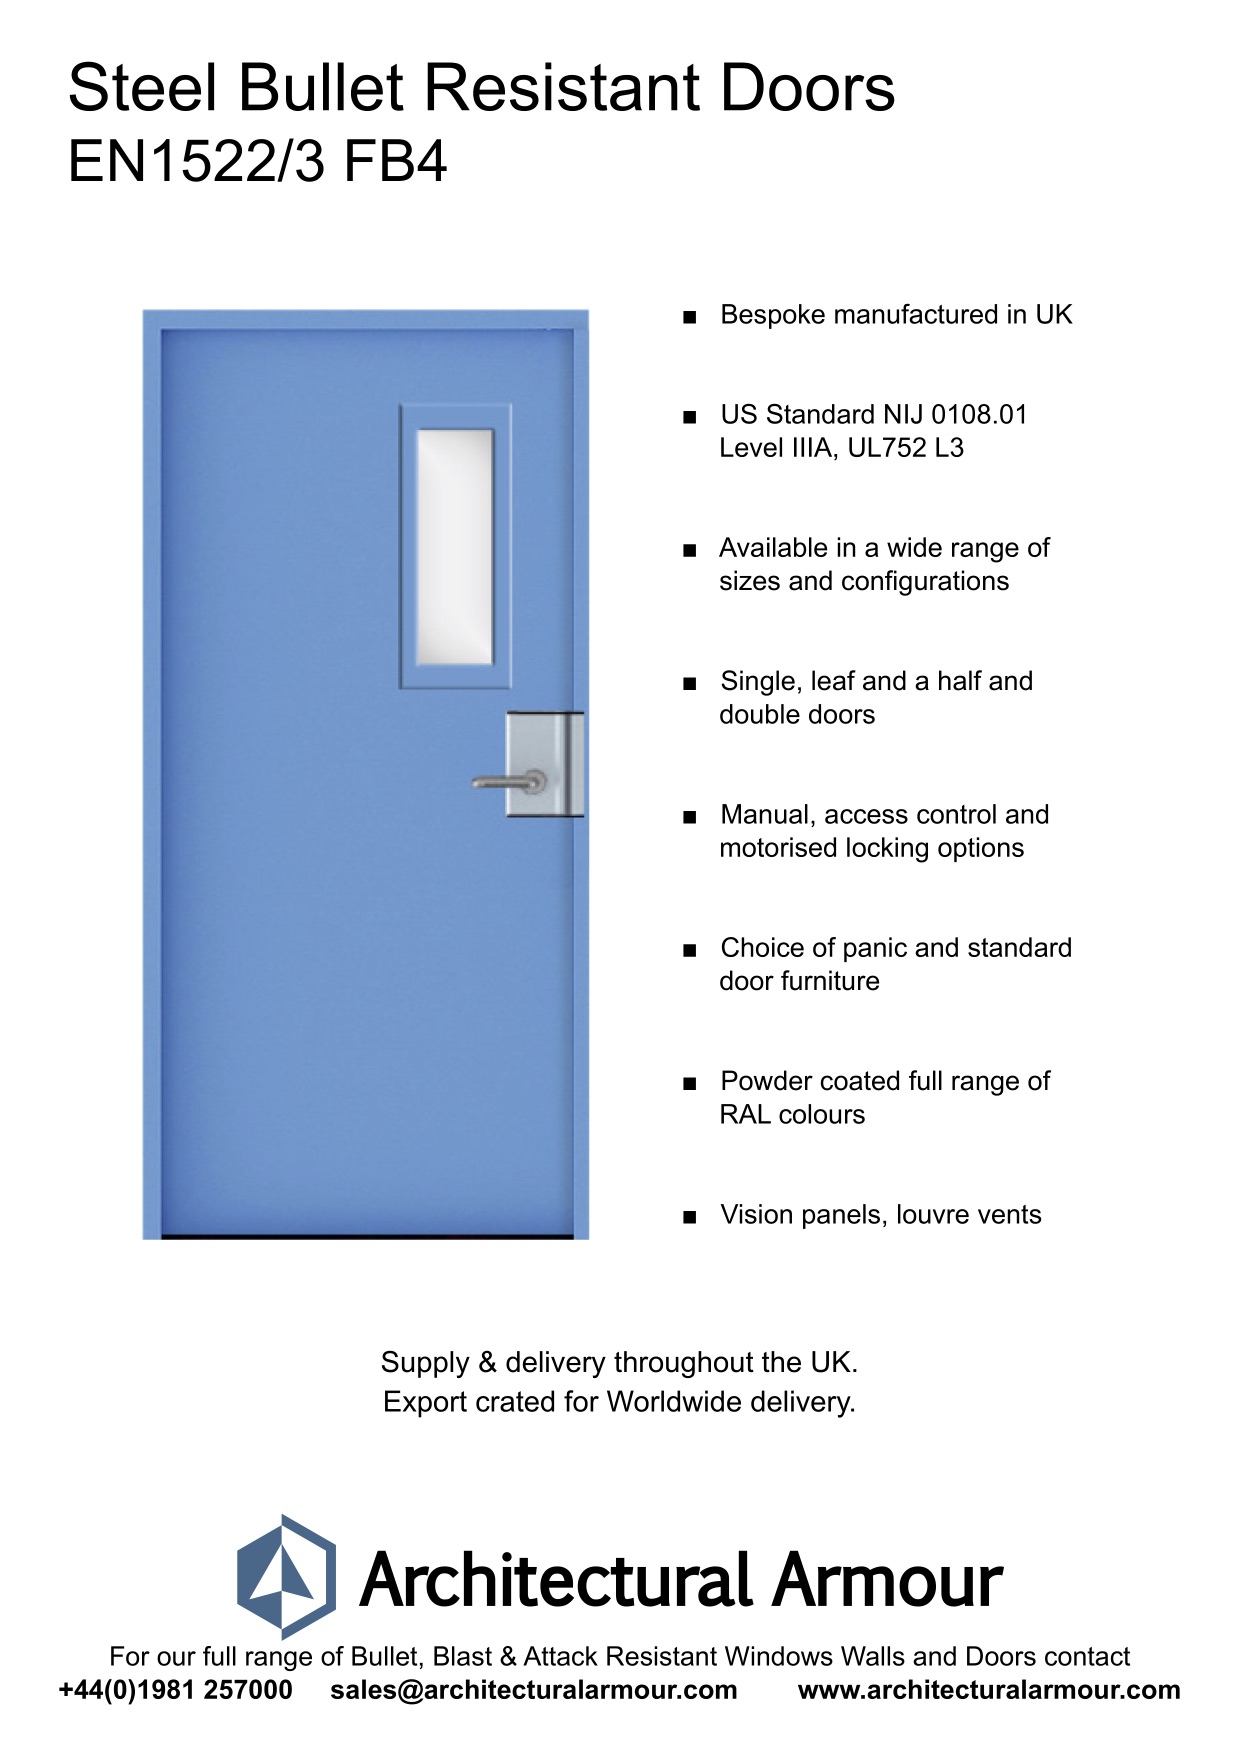 EN1522-3-FB4-Single-Slim-Vision-Panel-Bullet-Resistant-Steel-Door